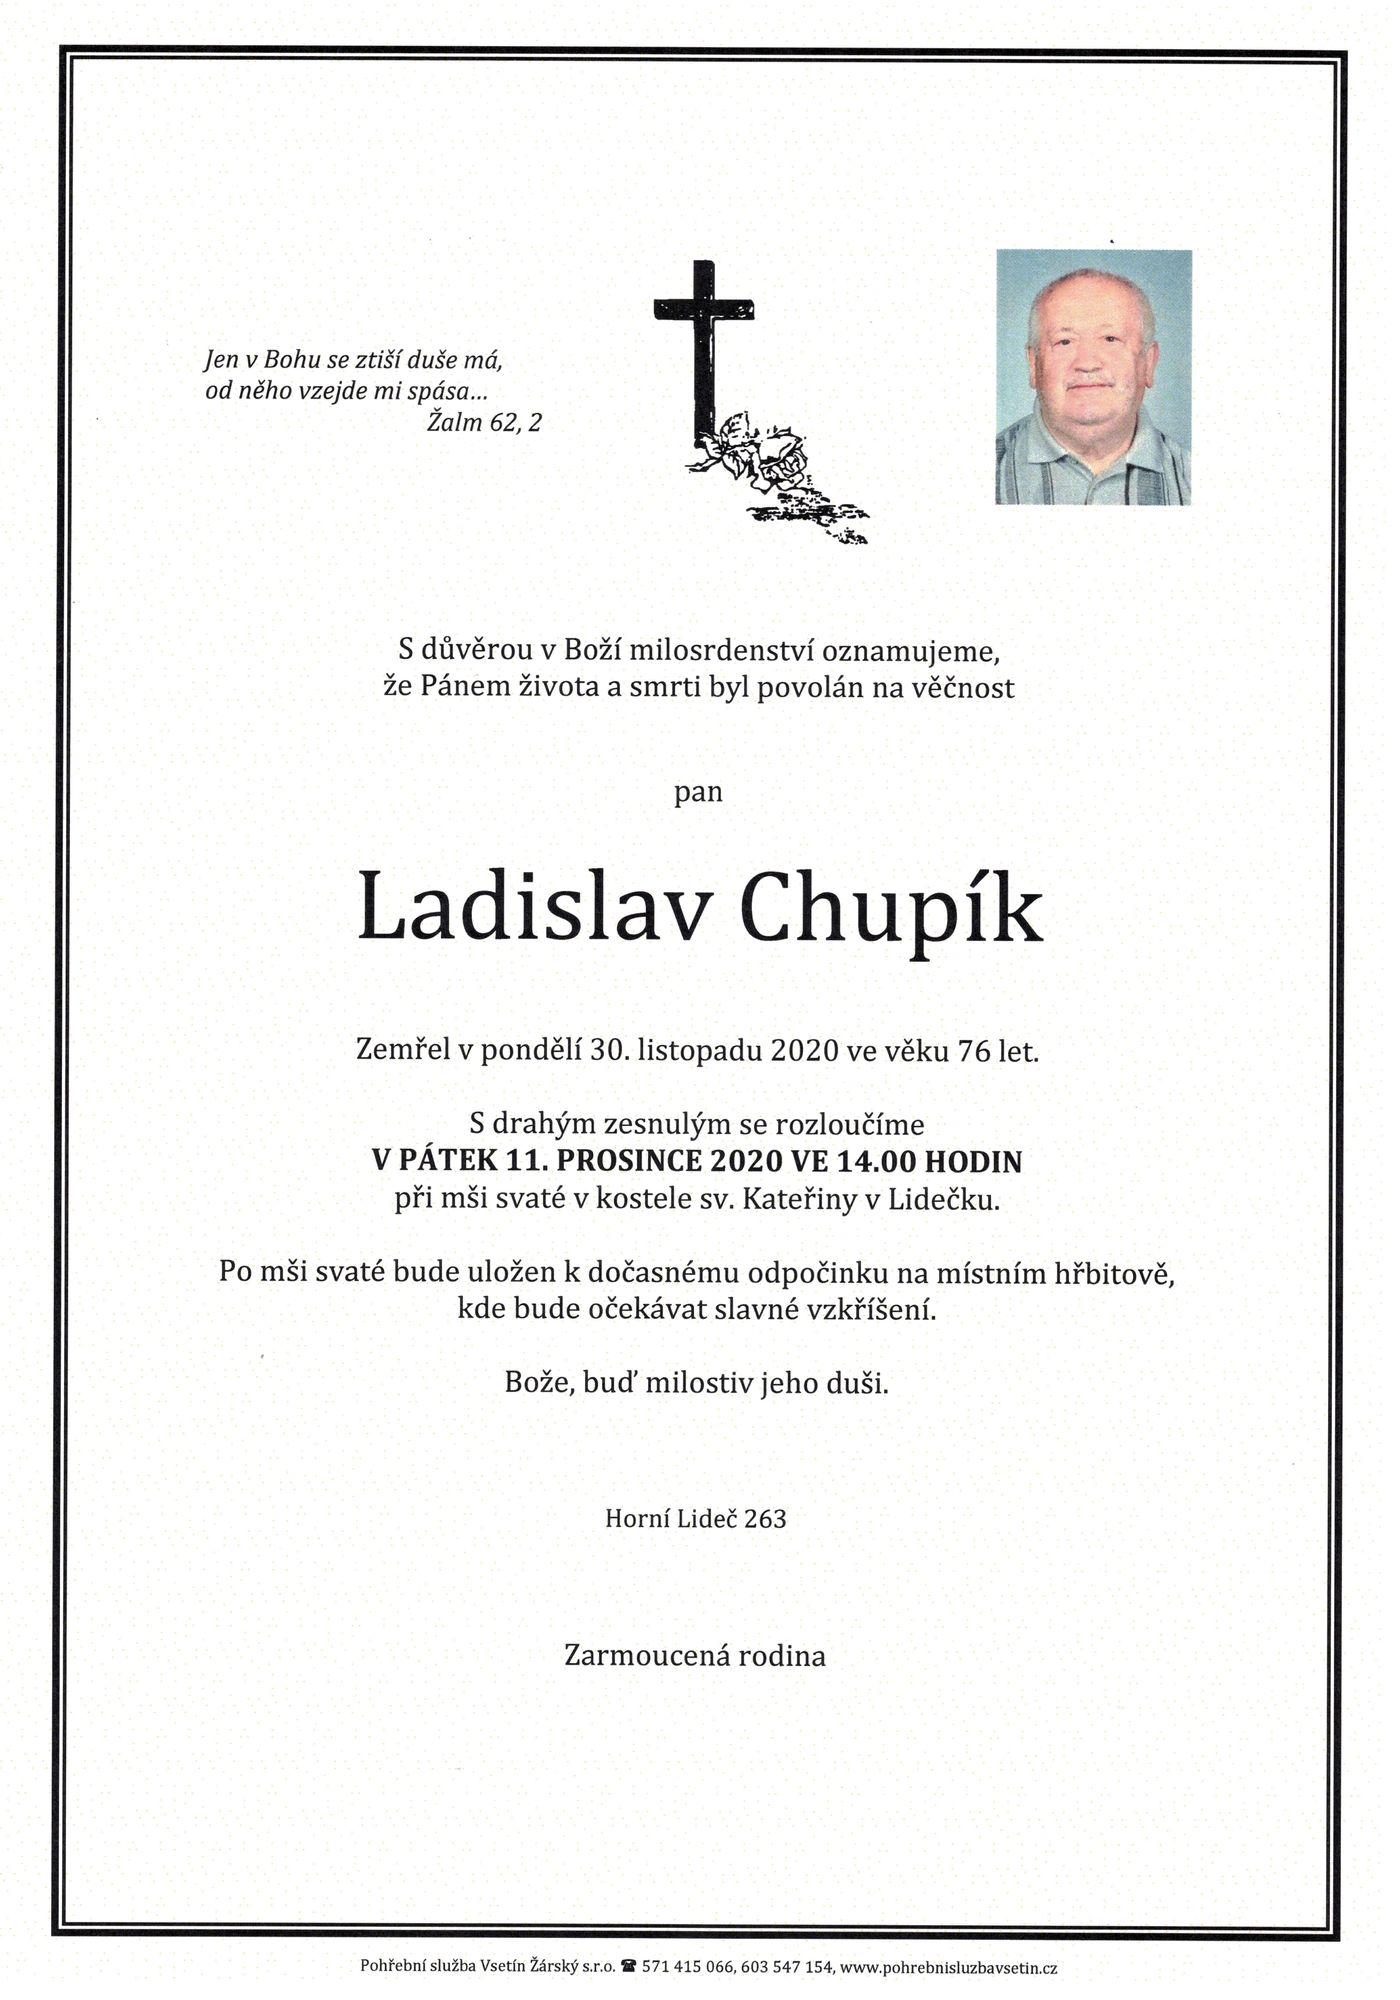 Ladislav Chupík